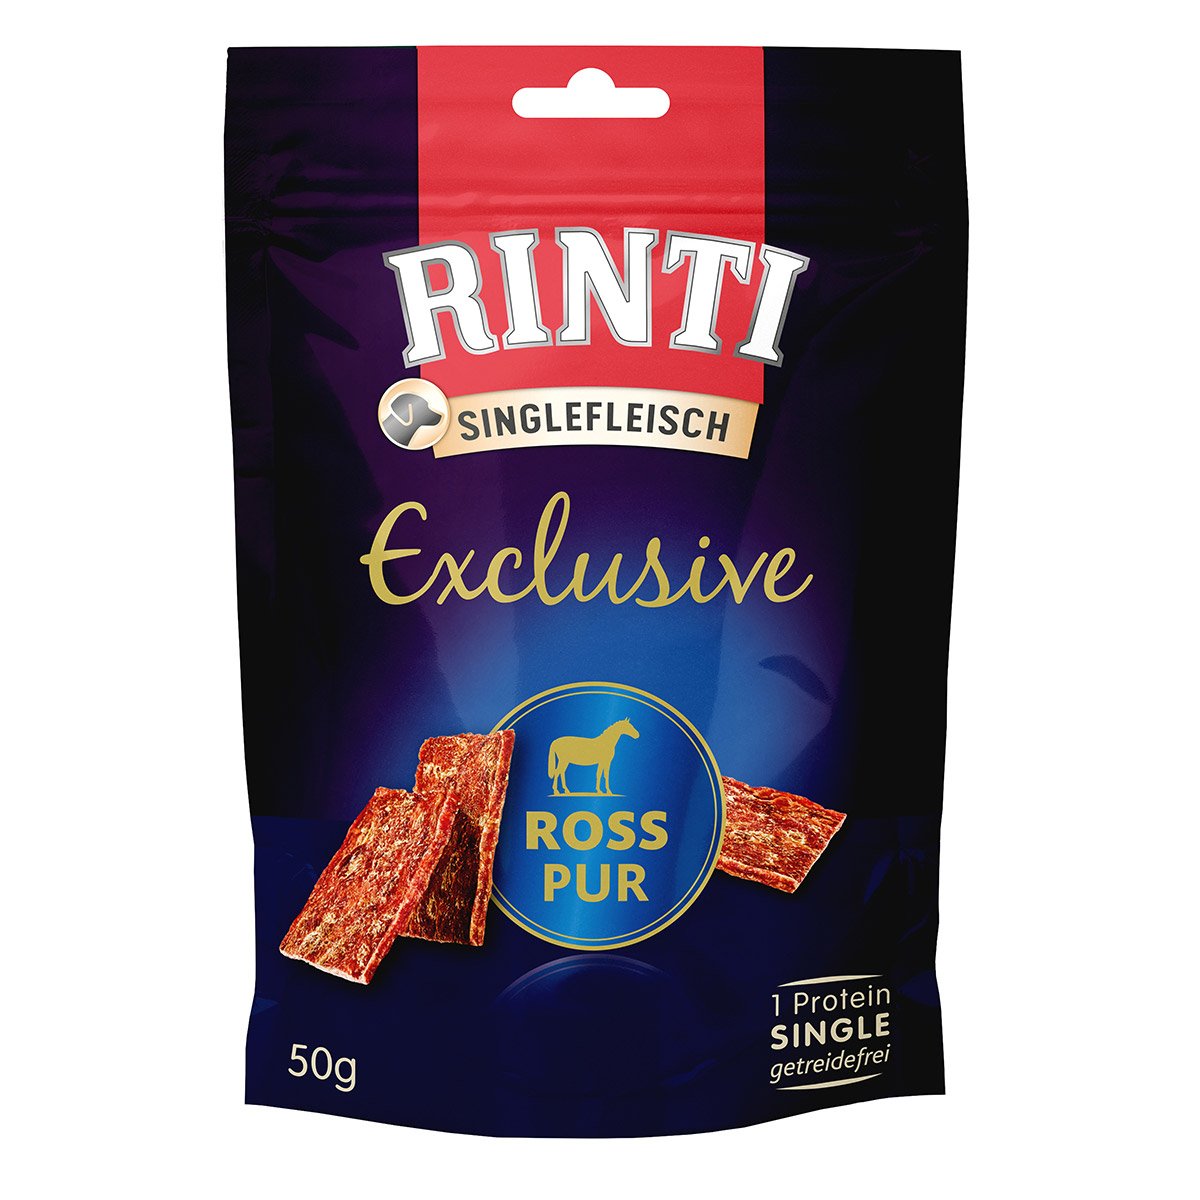 Rinti Singlefleisch Exclusive Snack Ross pur 6x50g